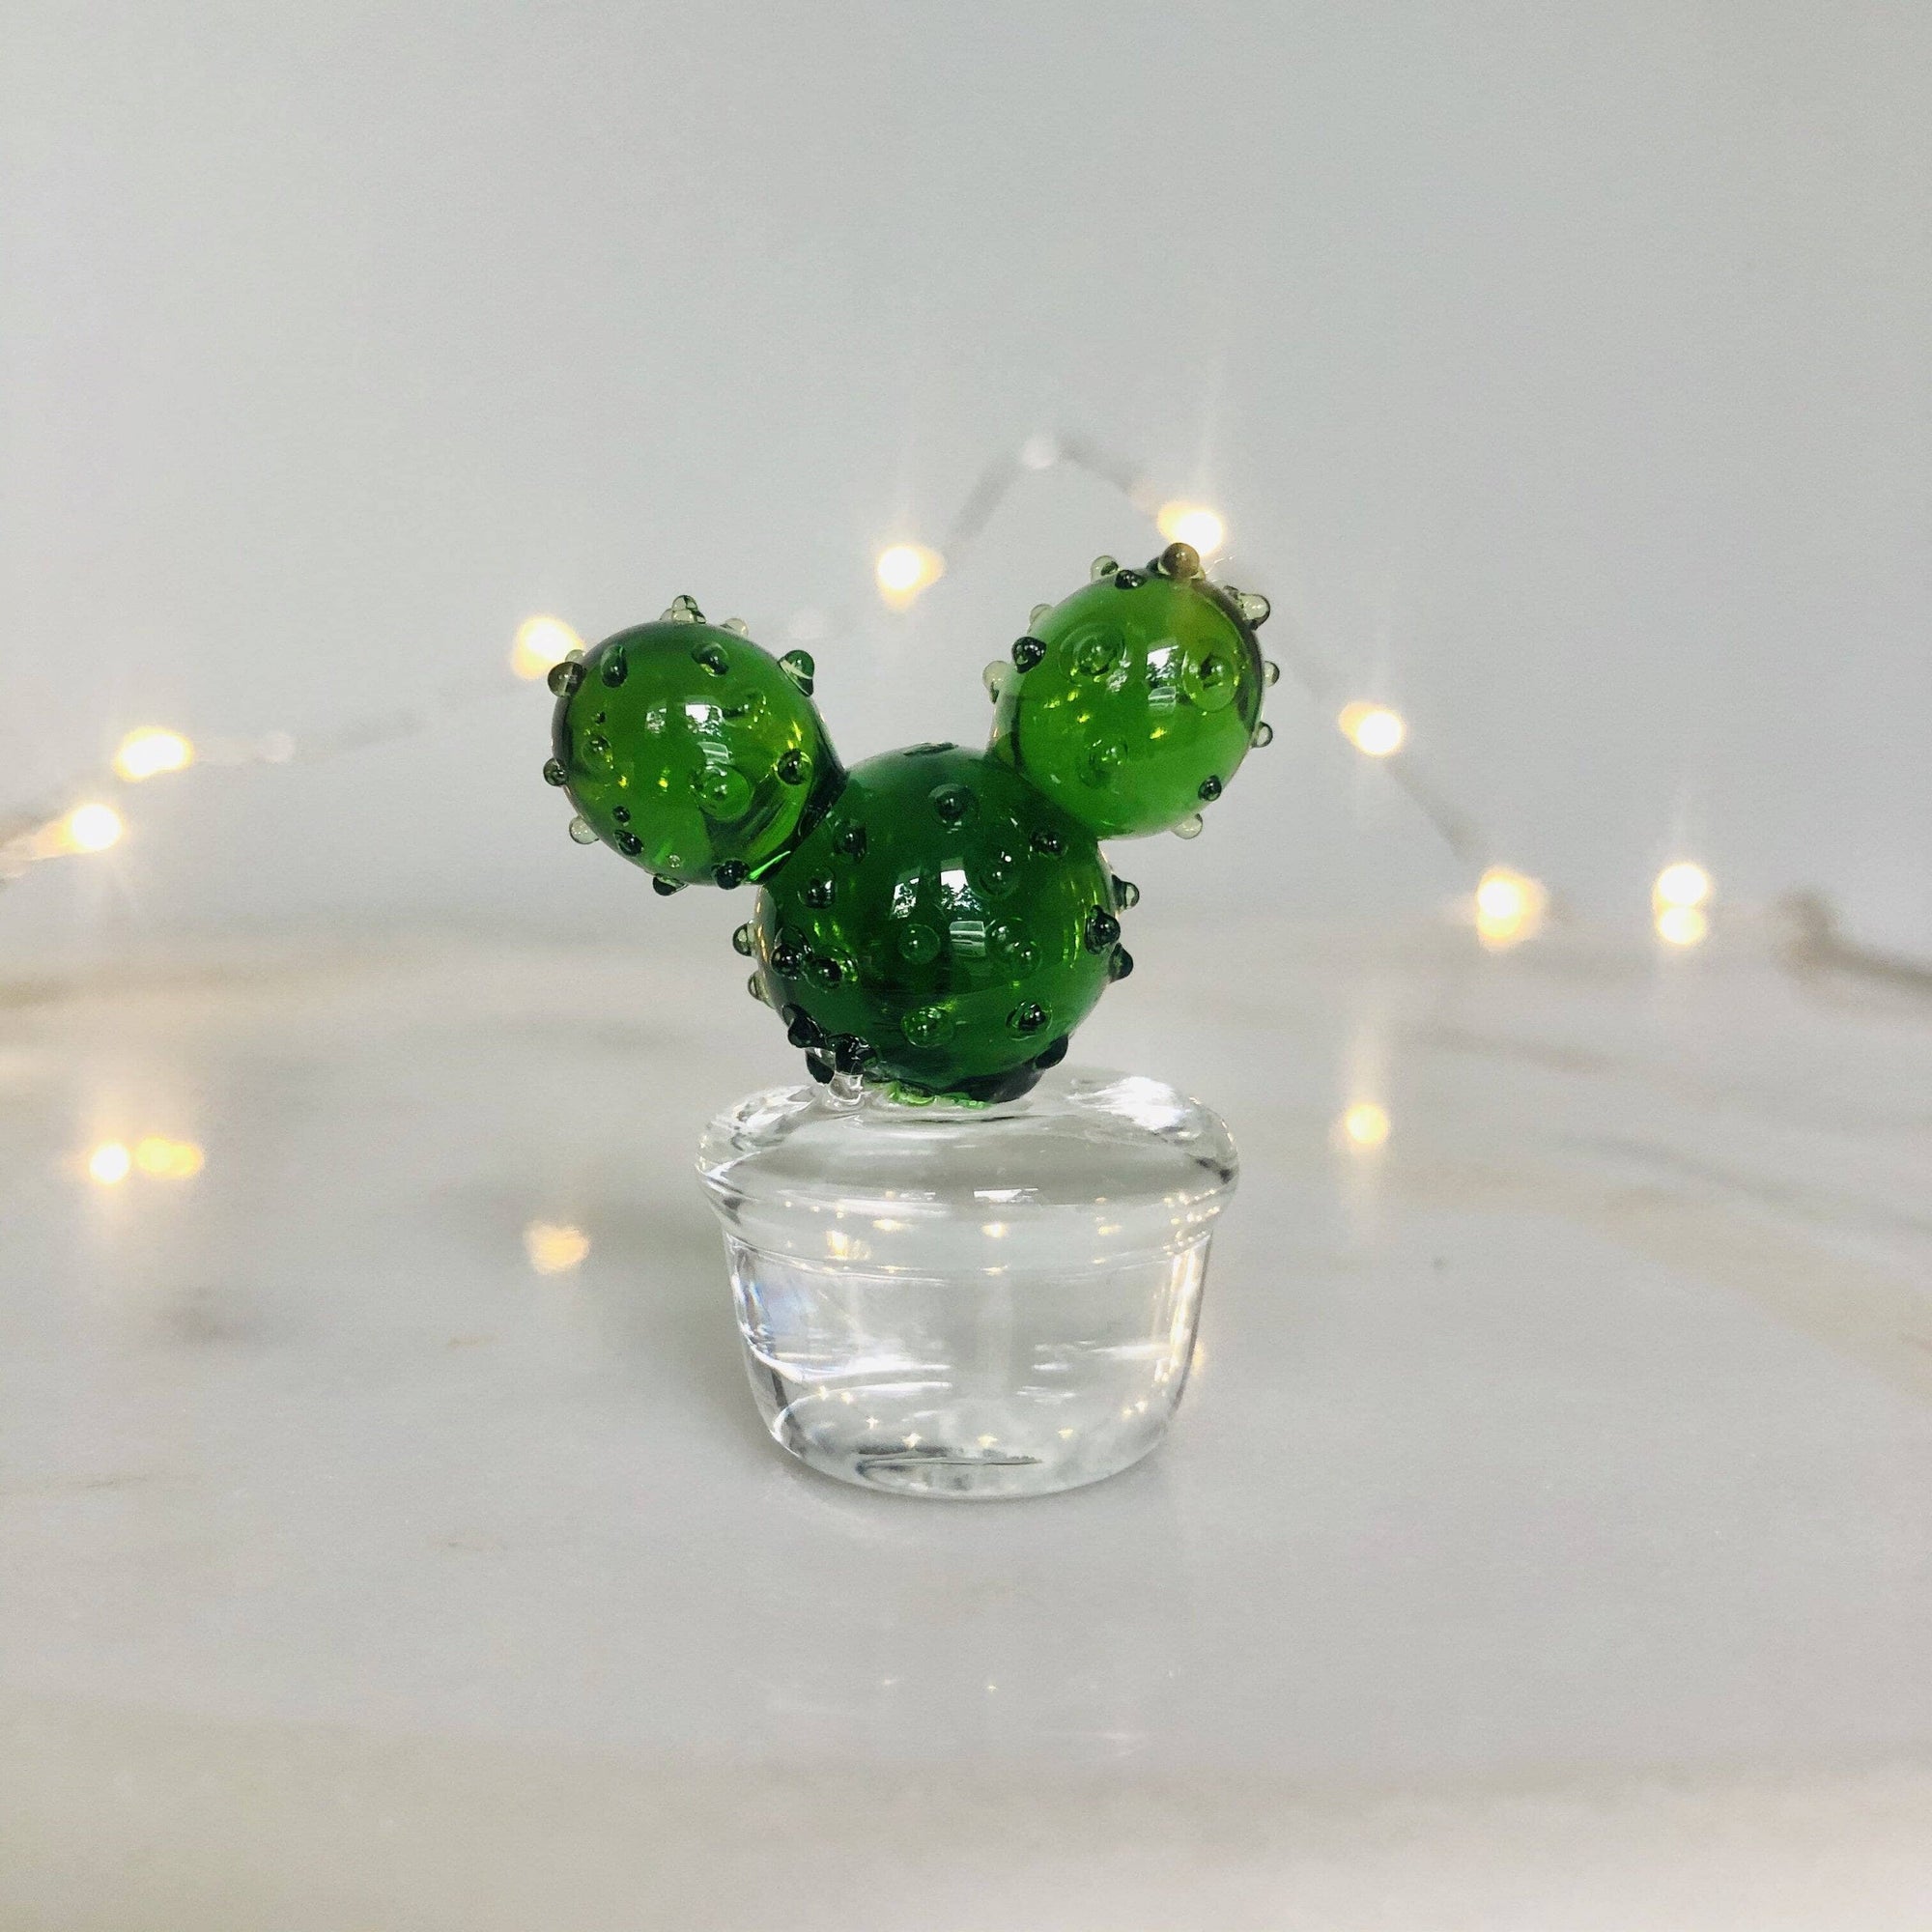 Glass Cactus Leia Miniature - 